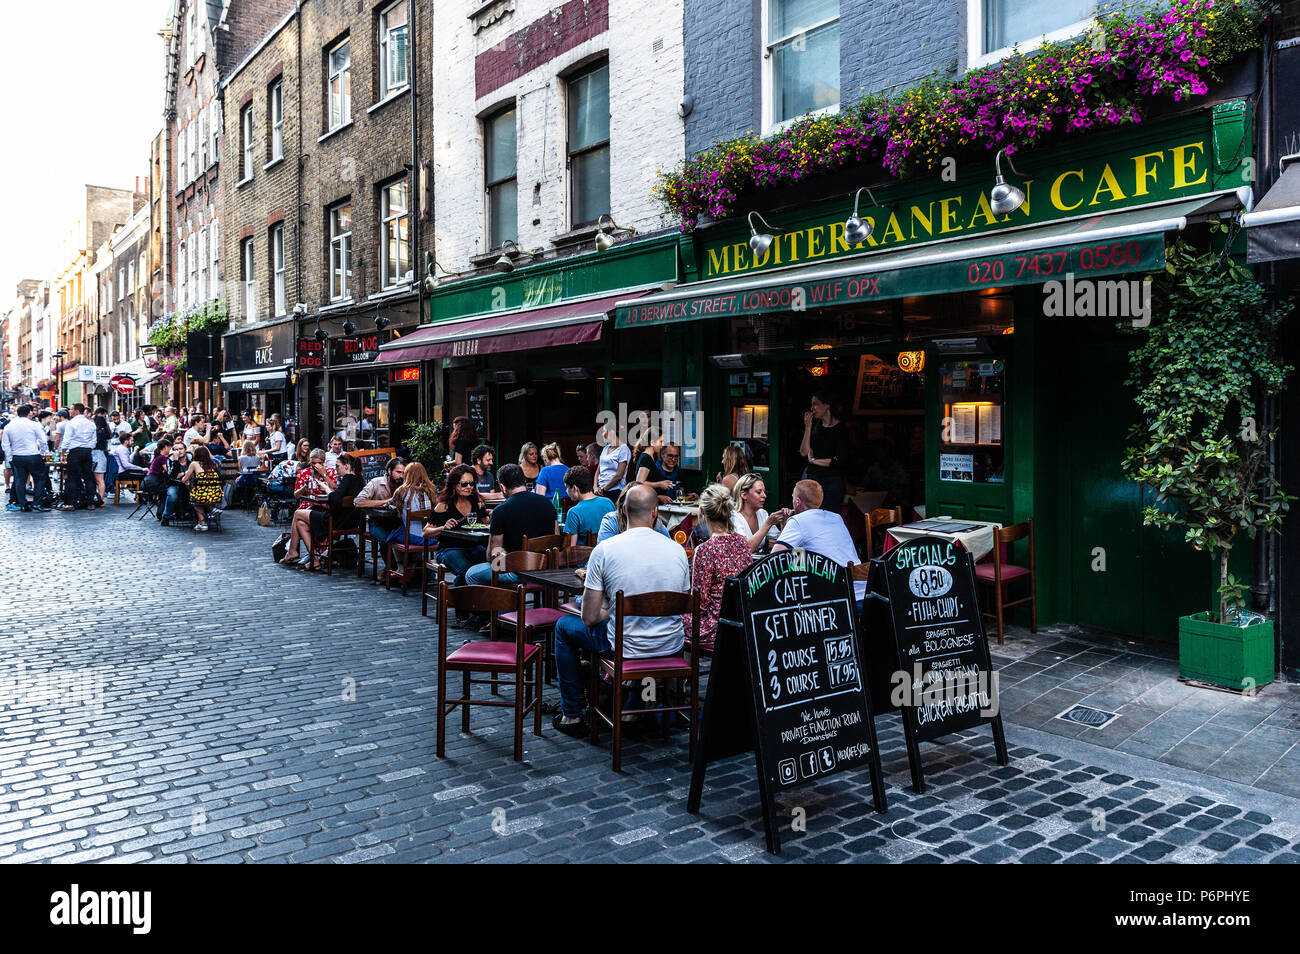 Rangée de restaurants où les clients peuvent dîner en plein air à l'extérieur sur la rue pavée, Berwick Street, Soho, Londres, Angleterre, Royaume-Uni. Banque D'Images